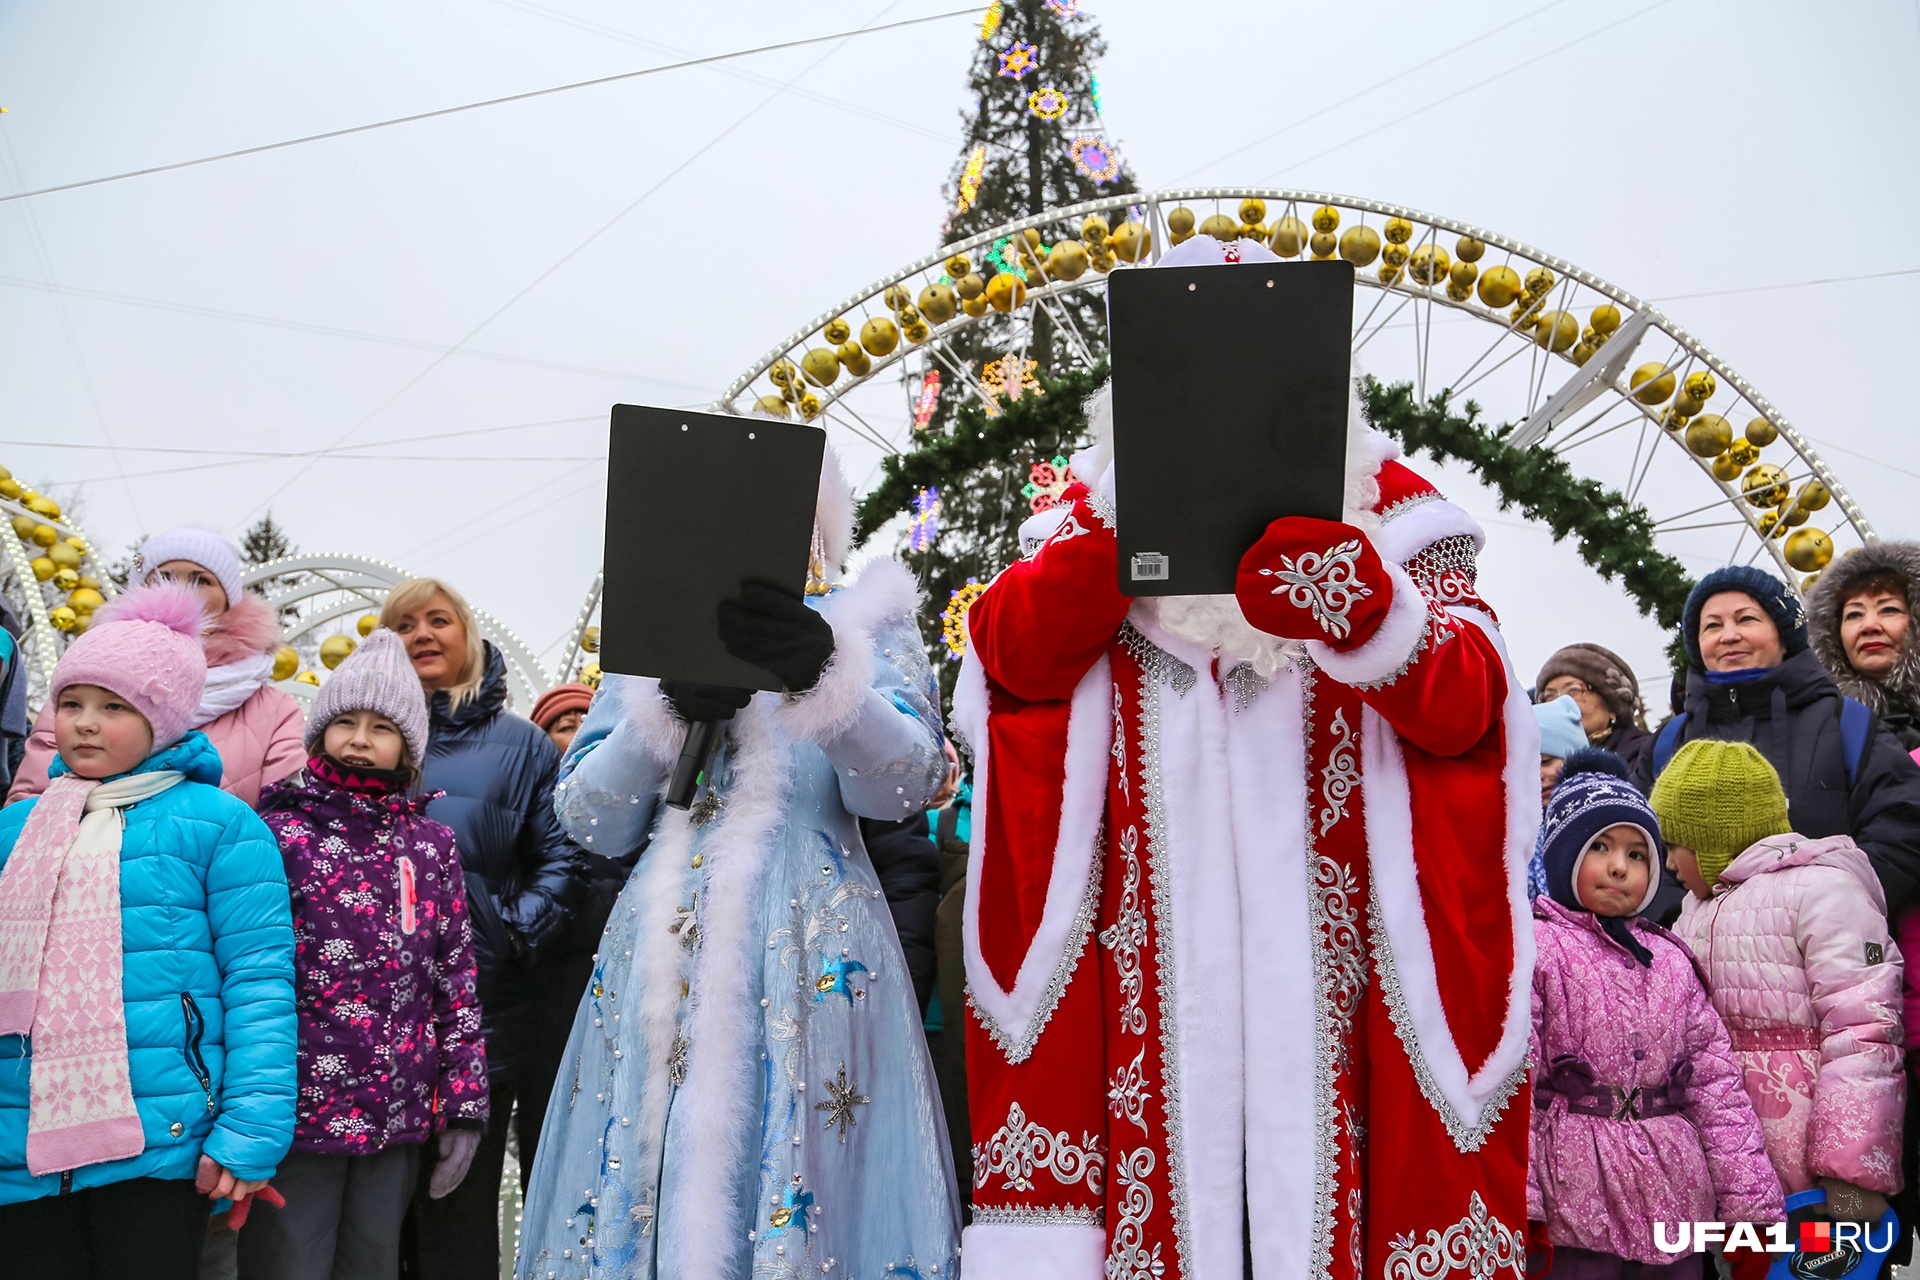 Хоровод в кедах, поздравления по бумажке и Бабы Морозы: в Уфе прошел парад новогодних волшебников